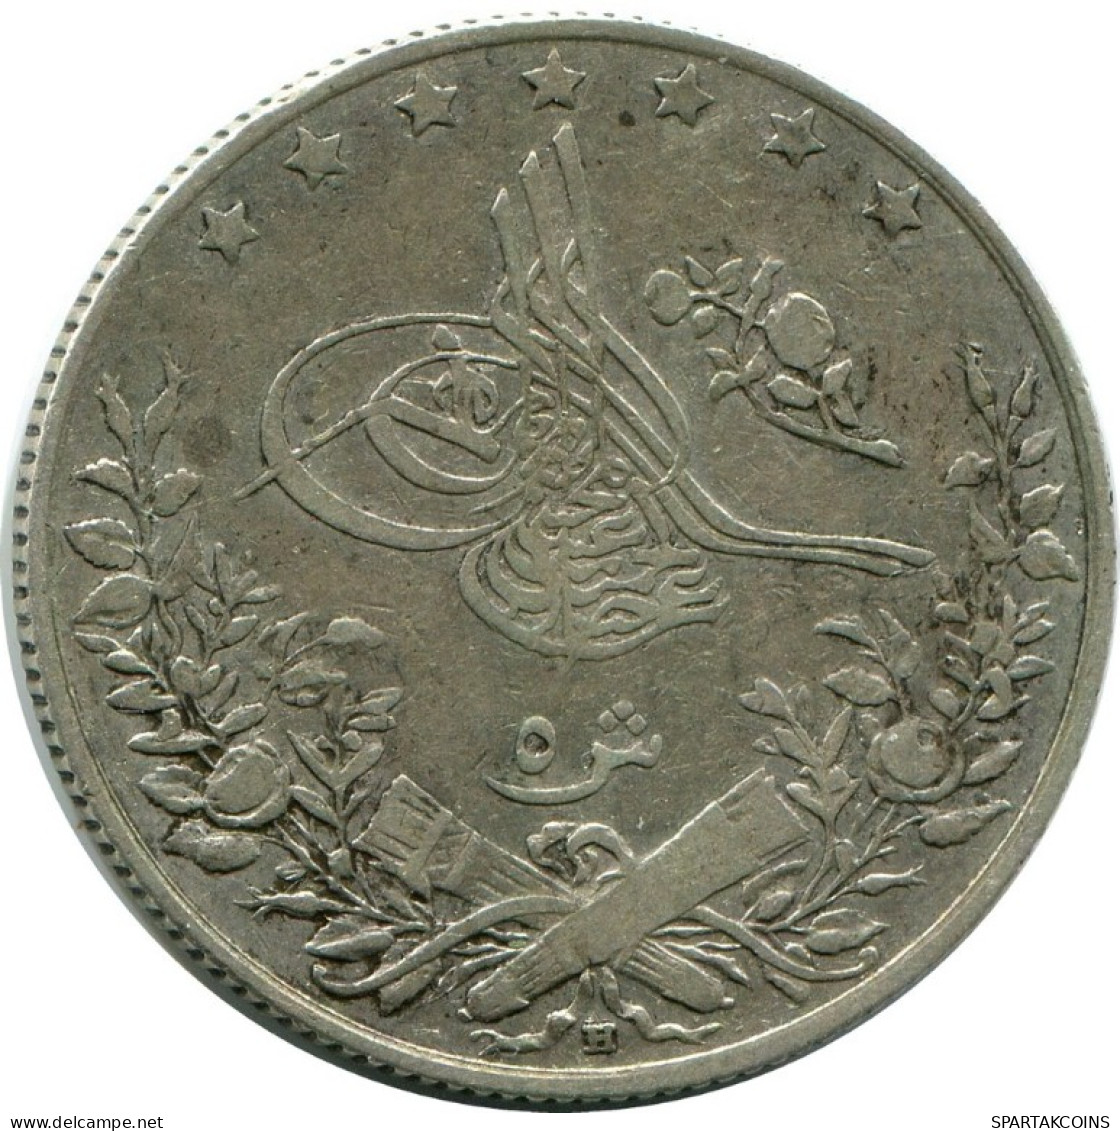 5 QIRSH 1905 EGYPT Islamic Coin #AH288.10.U.A - Aegypten